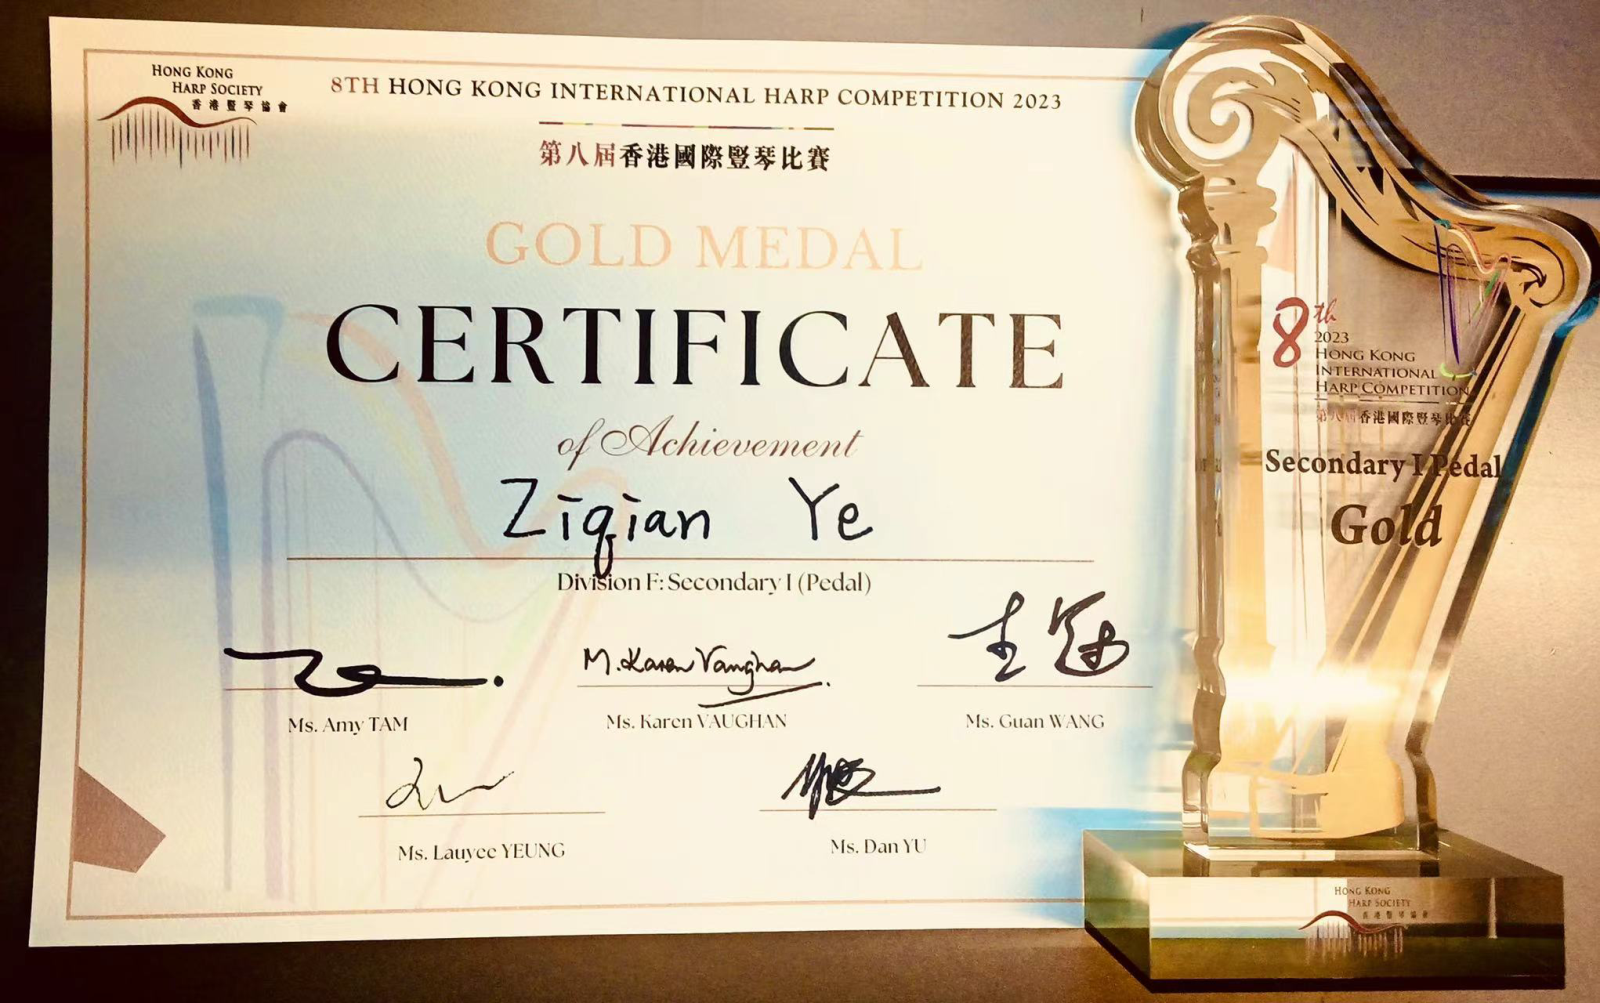 管弦系附中竖琴专业亚搏提现多久到账生叶子芊荣获第8届香港国际竖琴比赛初中组第一名